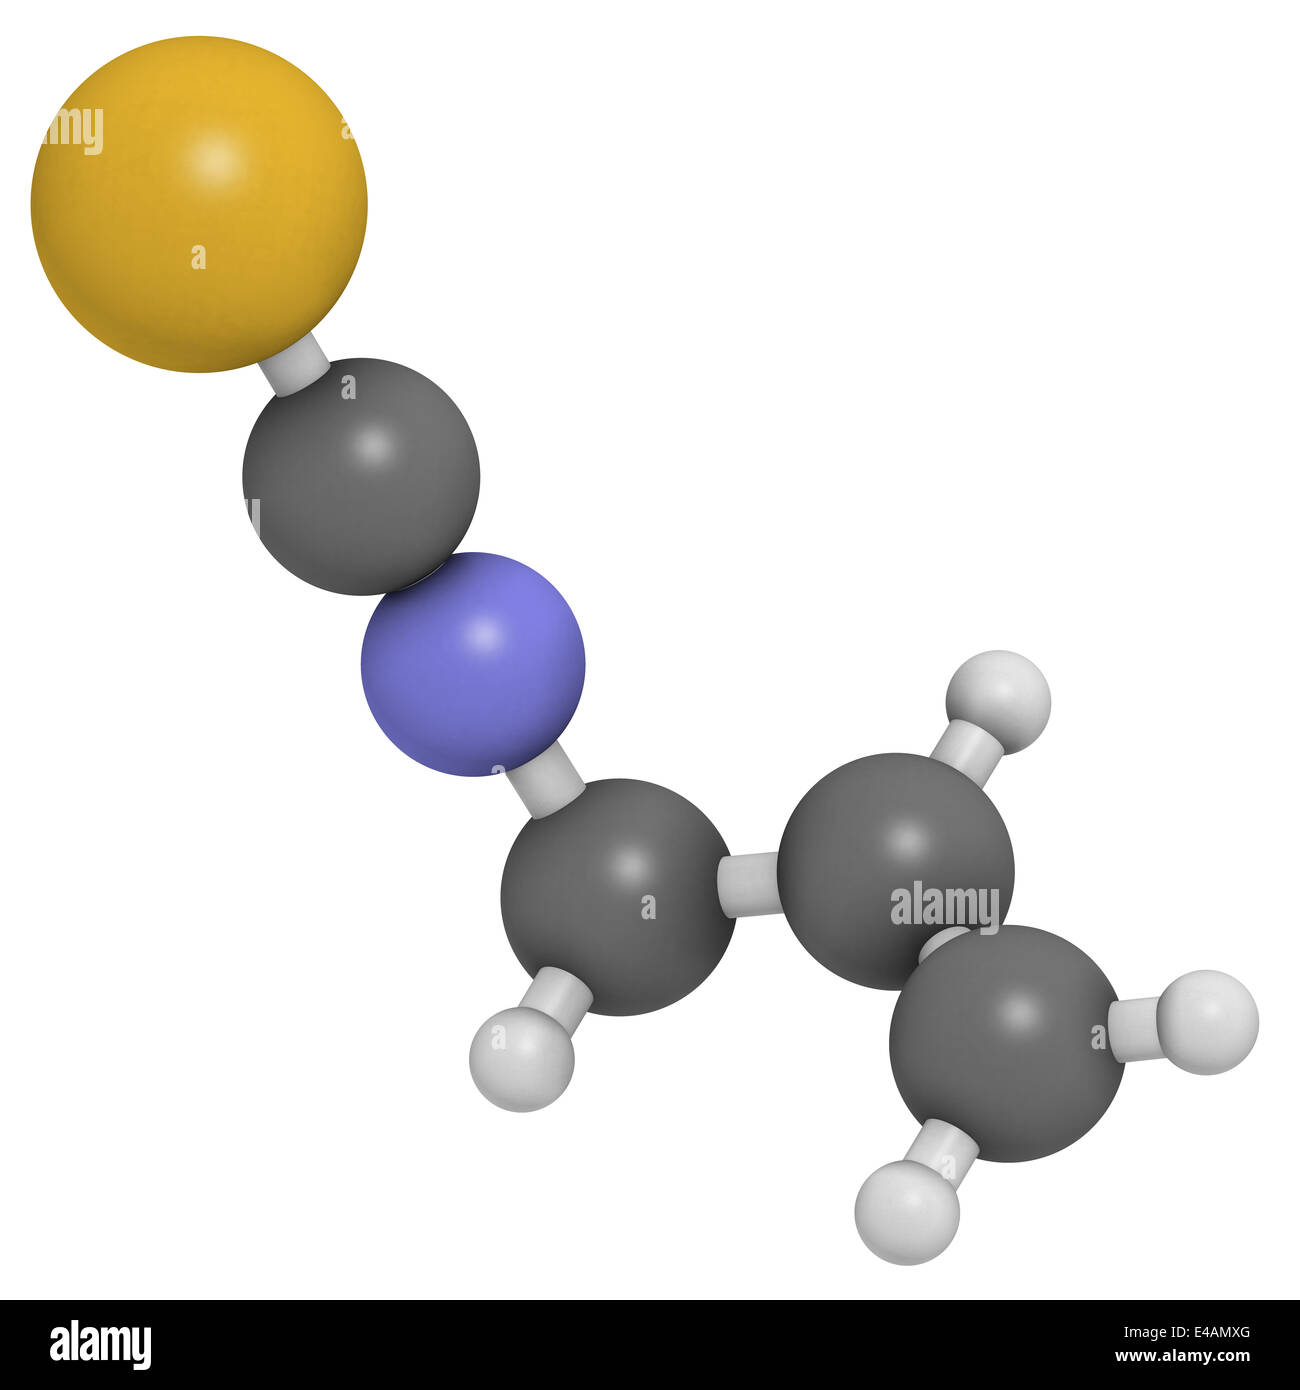 Allyl-Herstellung-Senf Schärfe-Molekül. Verantwortlich für den scharfen Geschmack von Senf, Wasabi und Rettich. Stockfoto